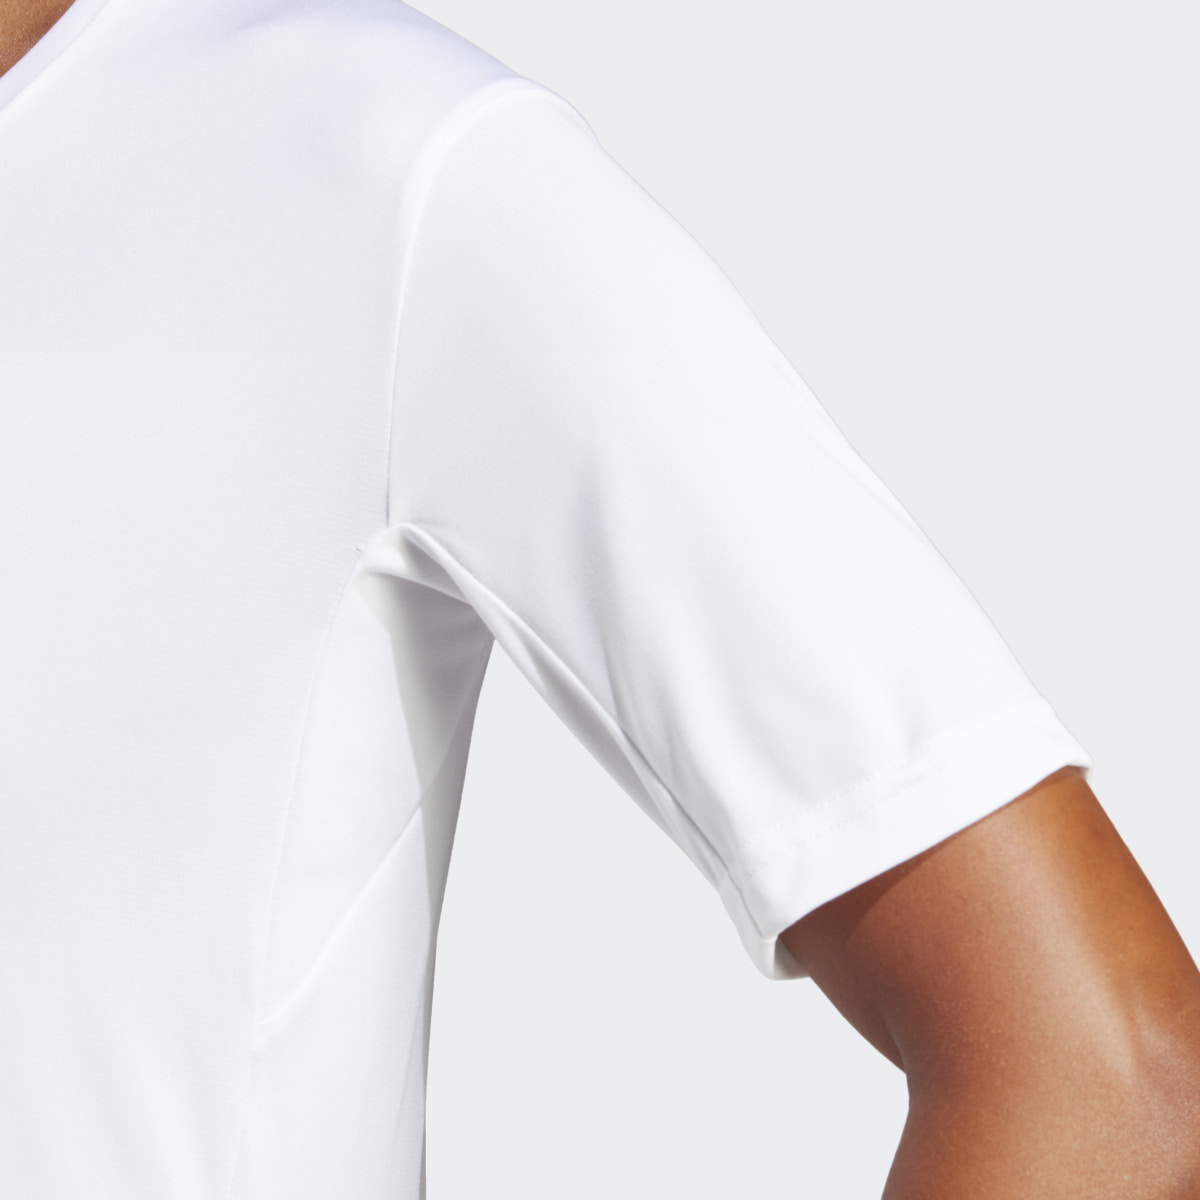 Adidas Camiseta Terrex Multi. 6